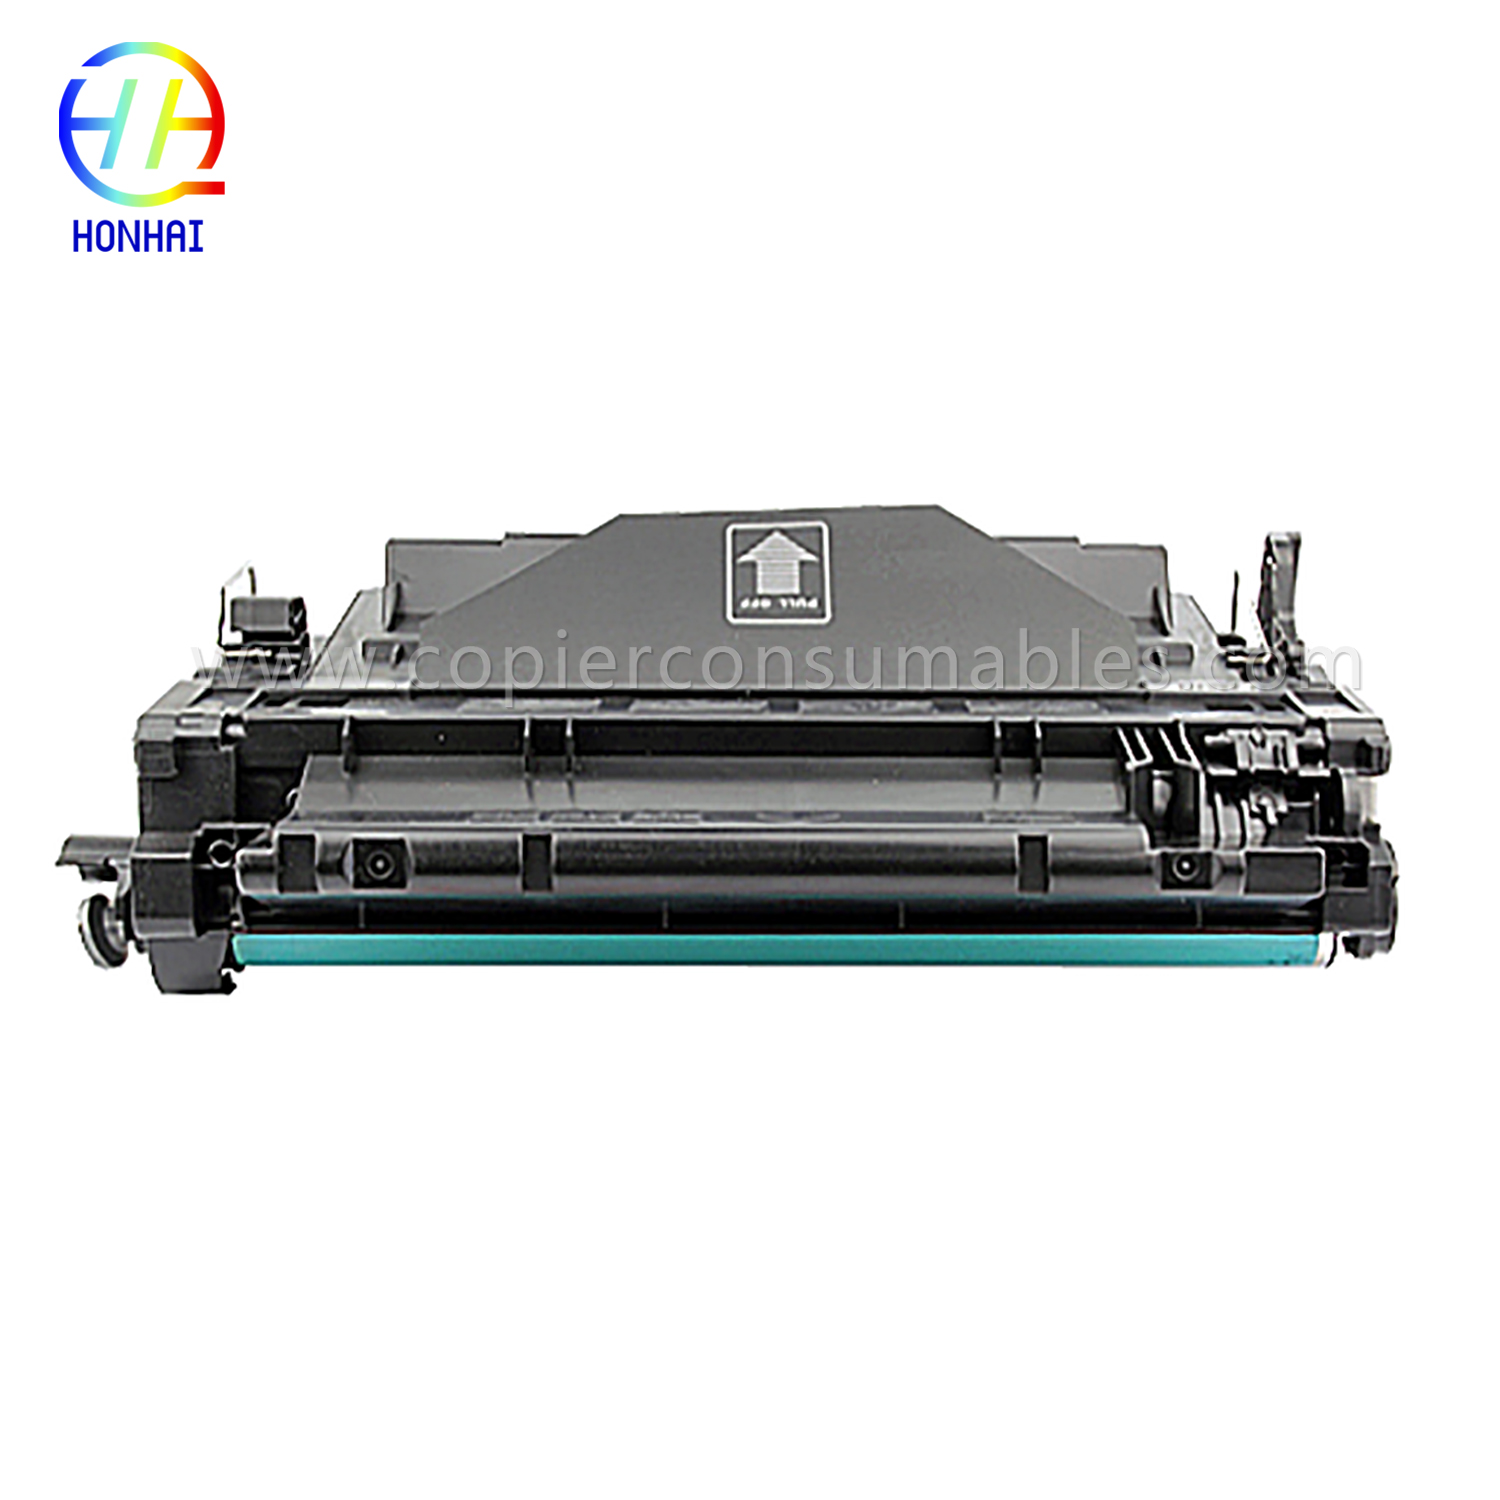 Kartrid Toner Warna pikeun HP LaserJet Pro MFP M521dn Enterprise P3015 CE255X